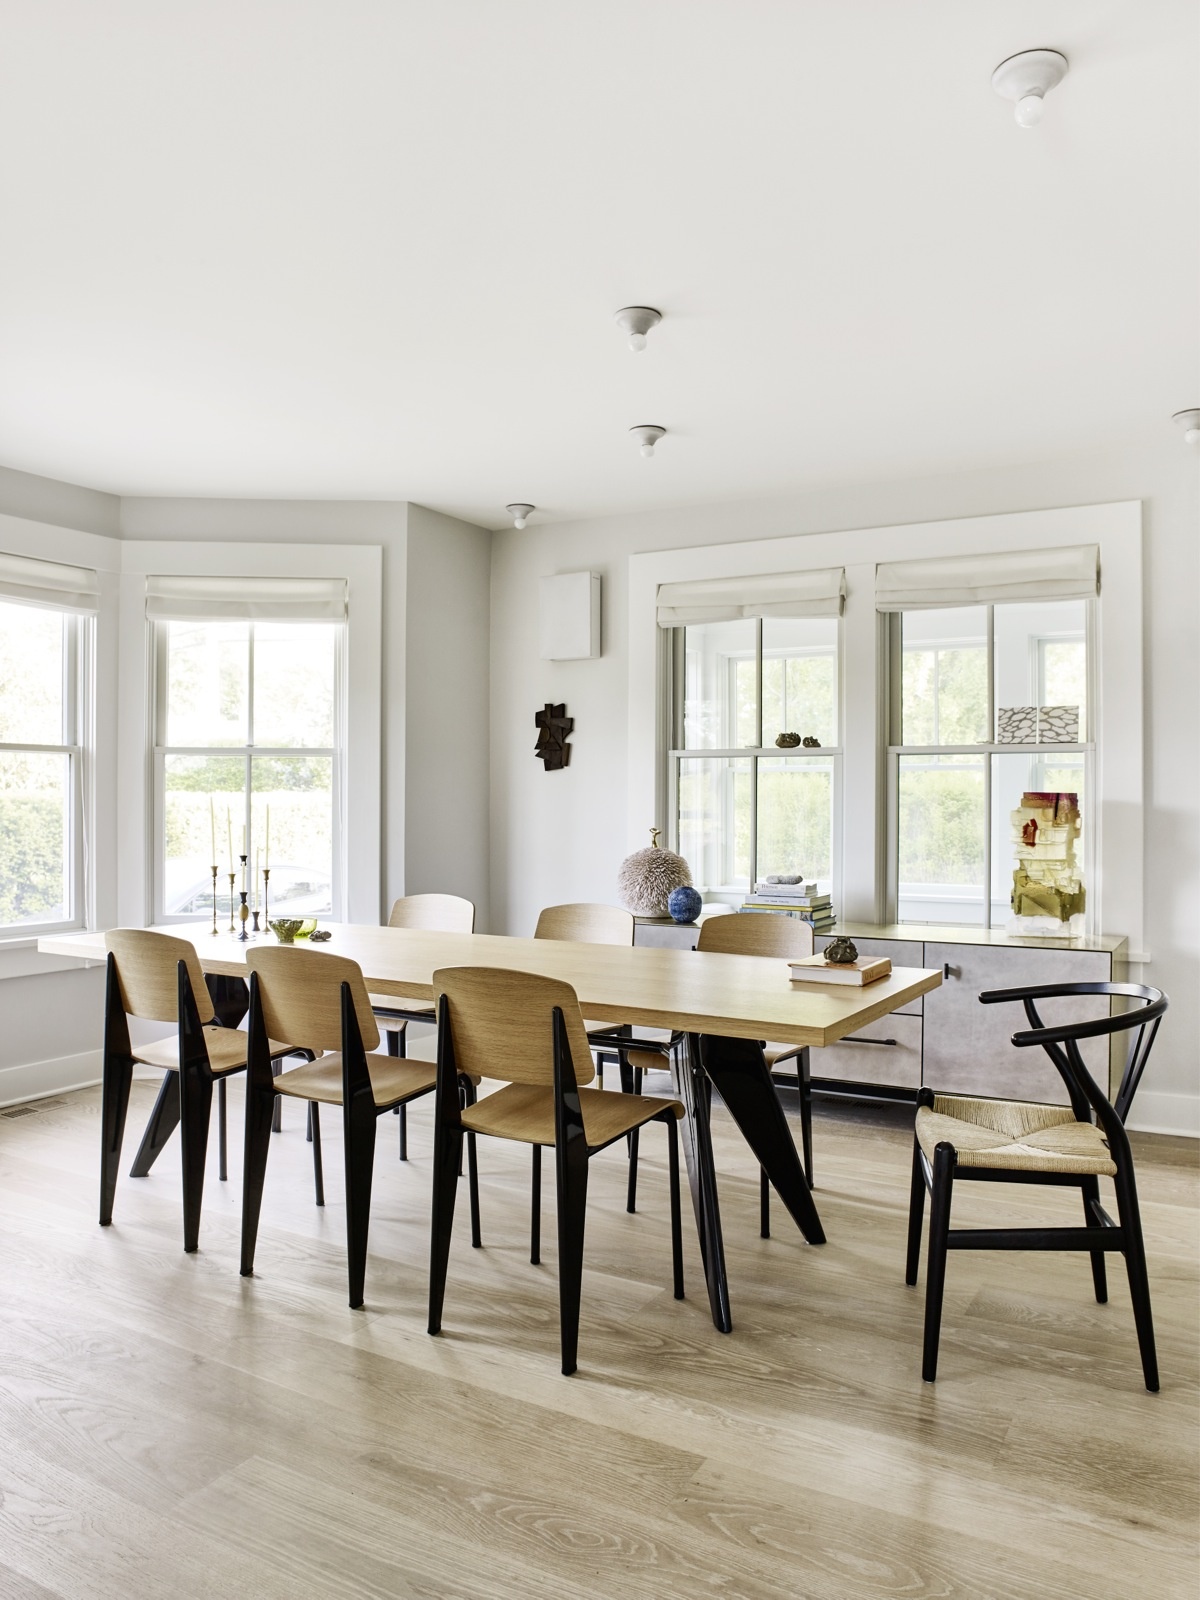 Tại phòng ăn, bộ bàn ghế gỗ phối màu đen tuyền sang trọng được thiết kế bởi  Jean Prouvé, riêng chiếc ghế khác biệt đặt ở đầu bàn ăn là của Hans Wegner. 